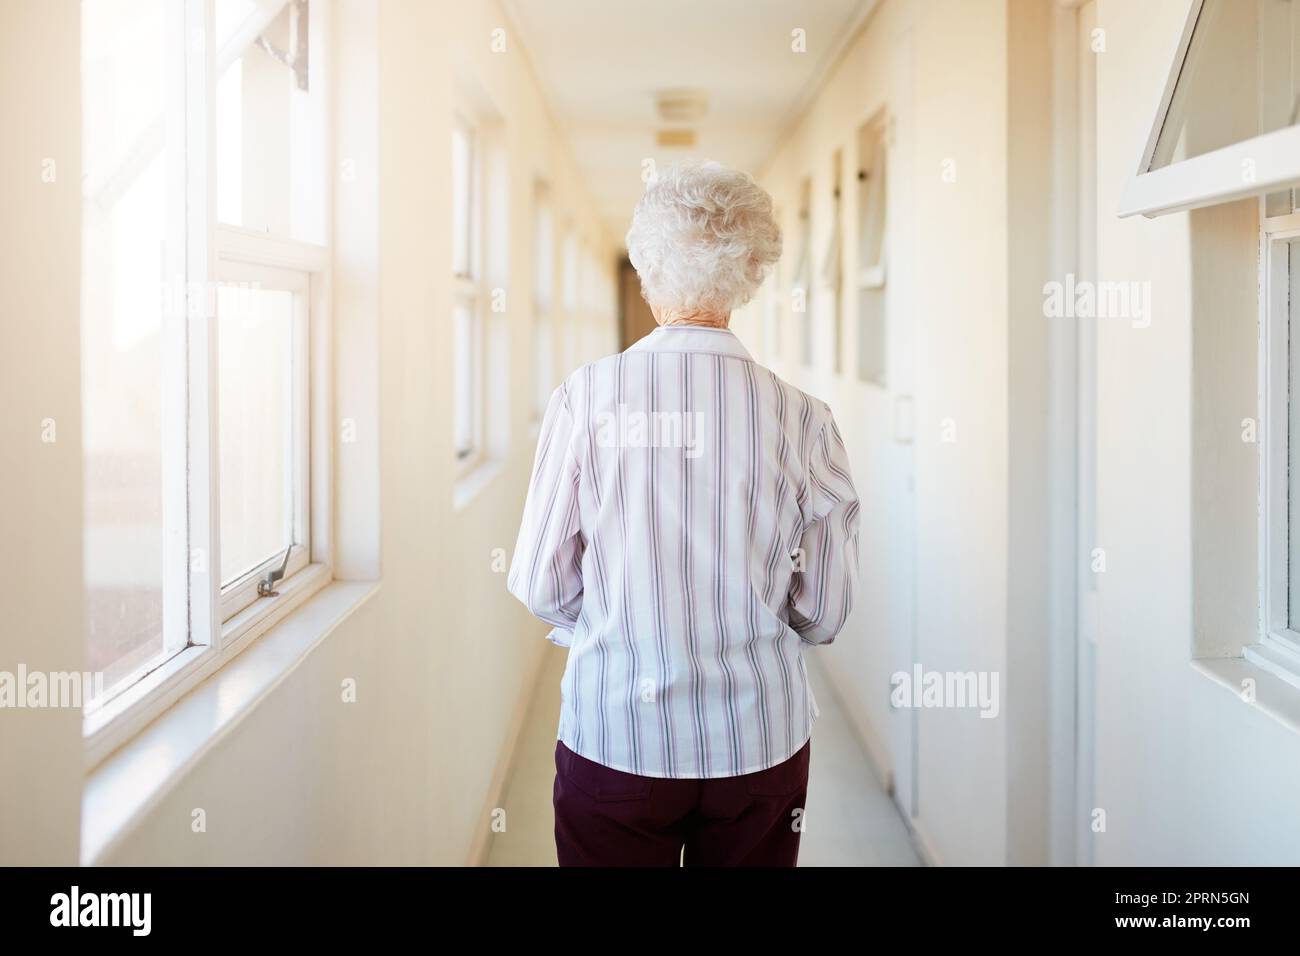 Dove chiama a casa ora. Ripresa da dietro di una donna anziana che cammina lungo un corridoio in una casa di riposo Foto Stock